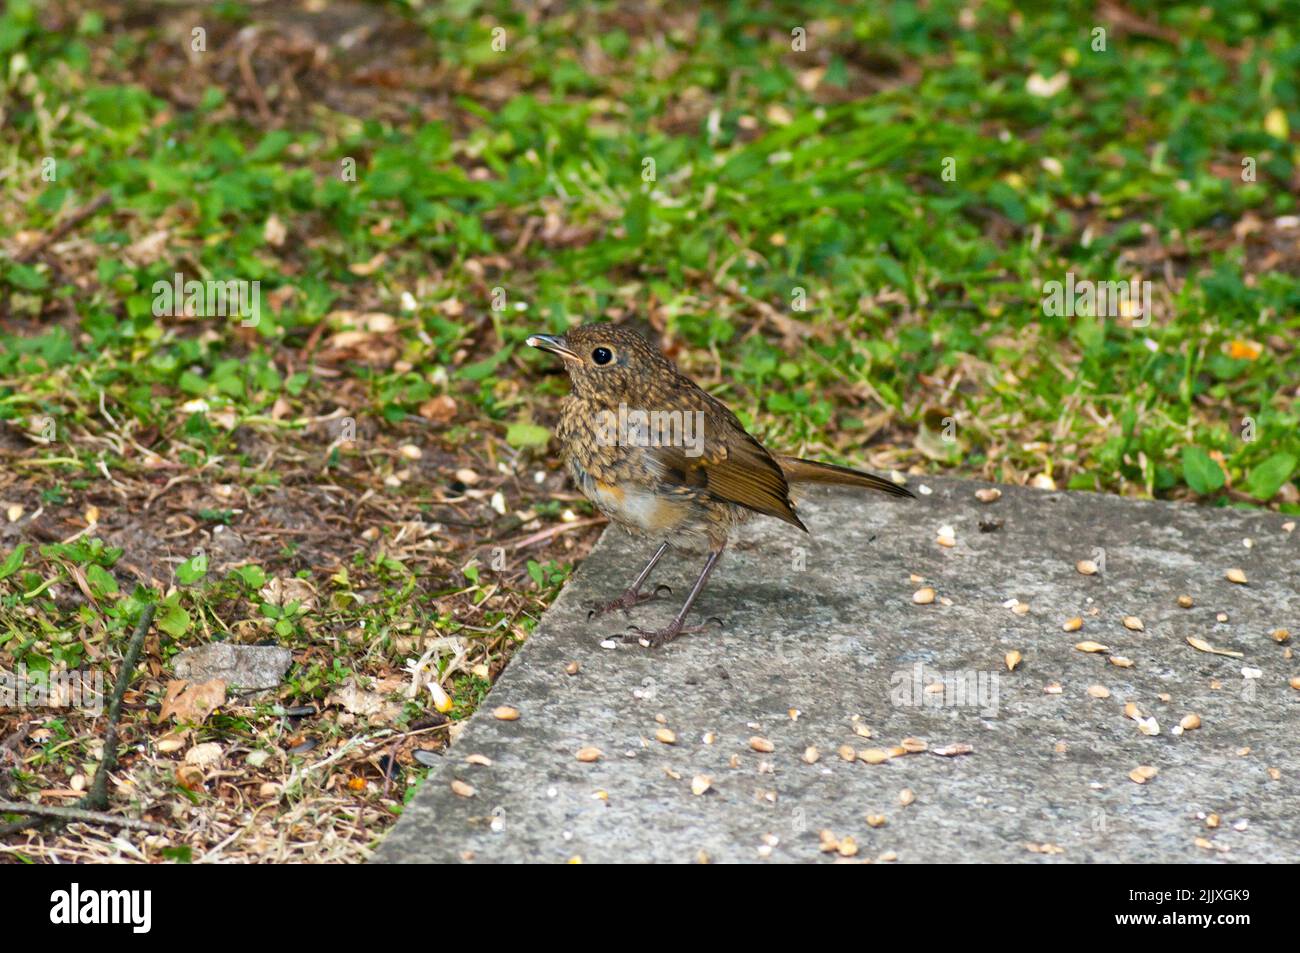 Juvenille Blackbird debout sur ses pieds manger avec de la nourriture dans son bec Banque D'Images